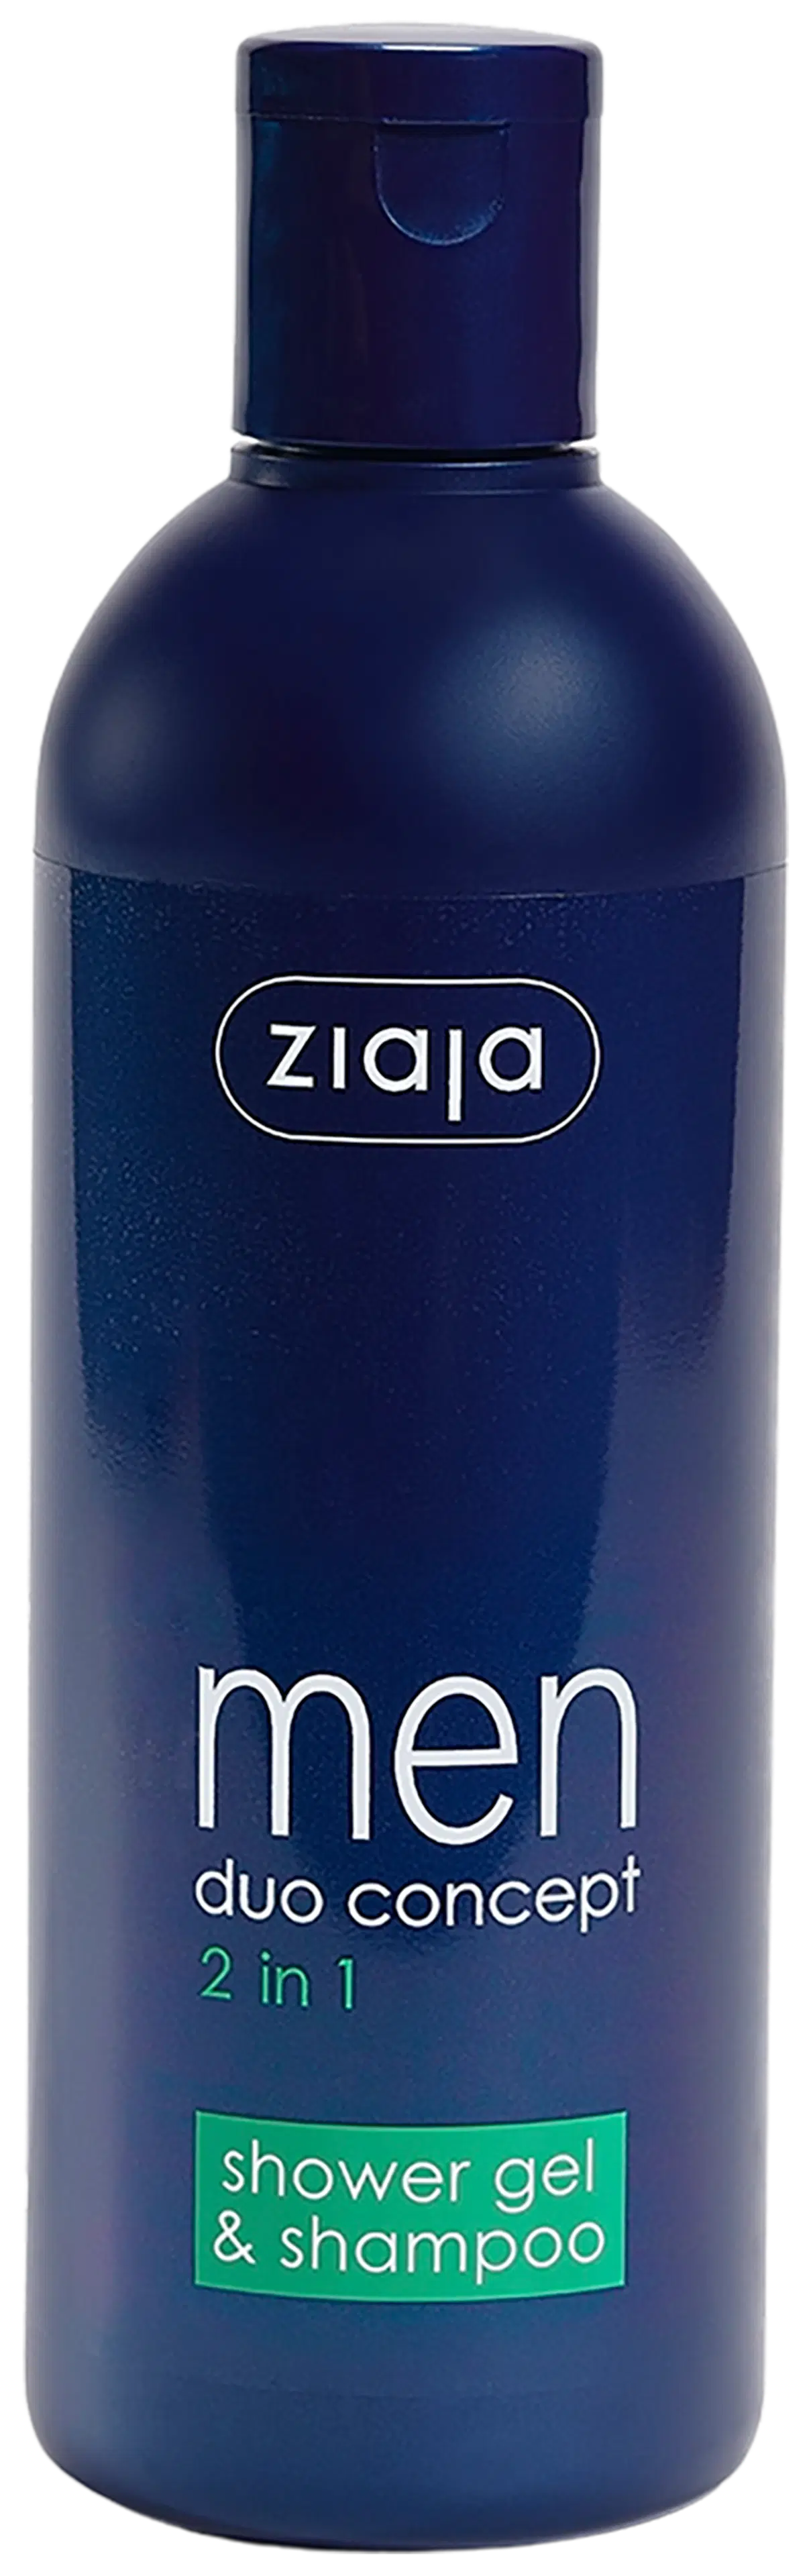 Ziaja Men 2in1 suihkugeeli-shampoo 300 ml